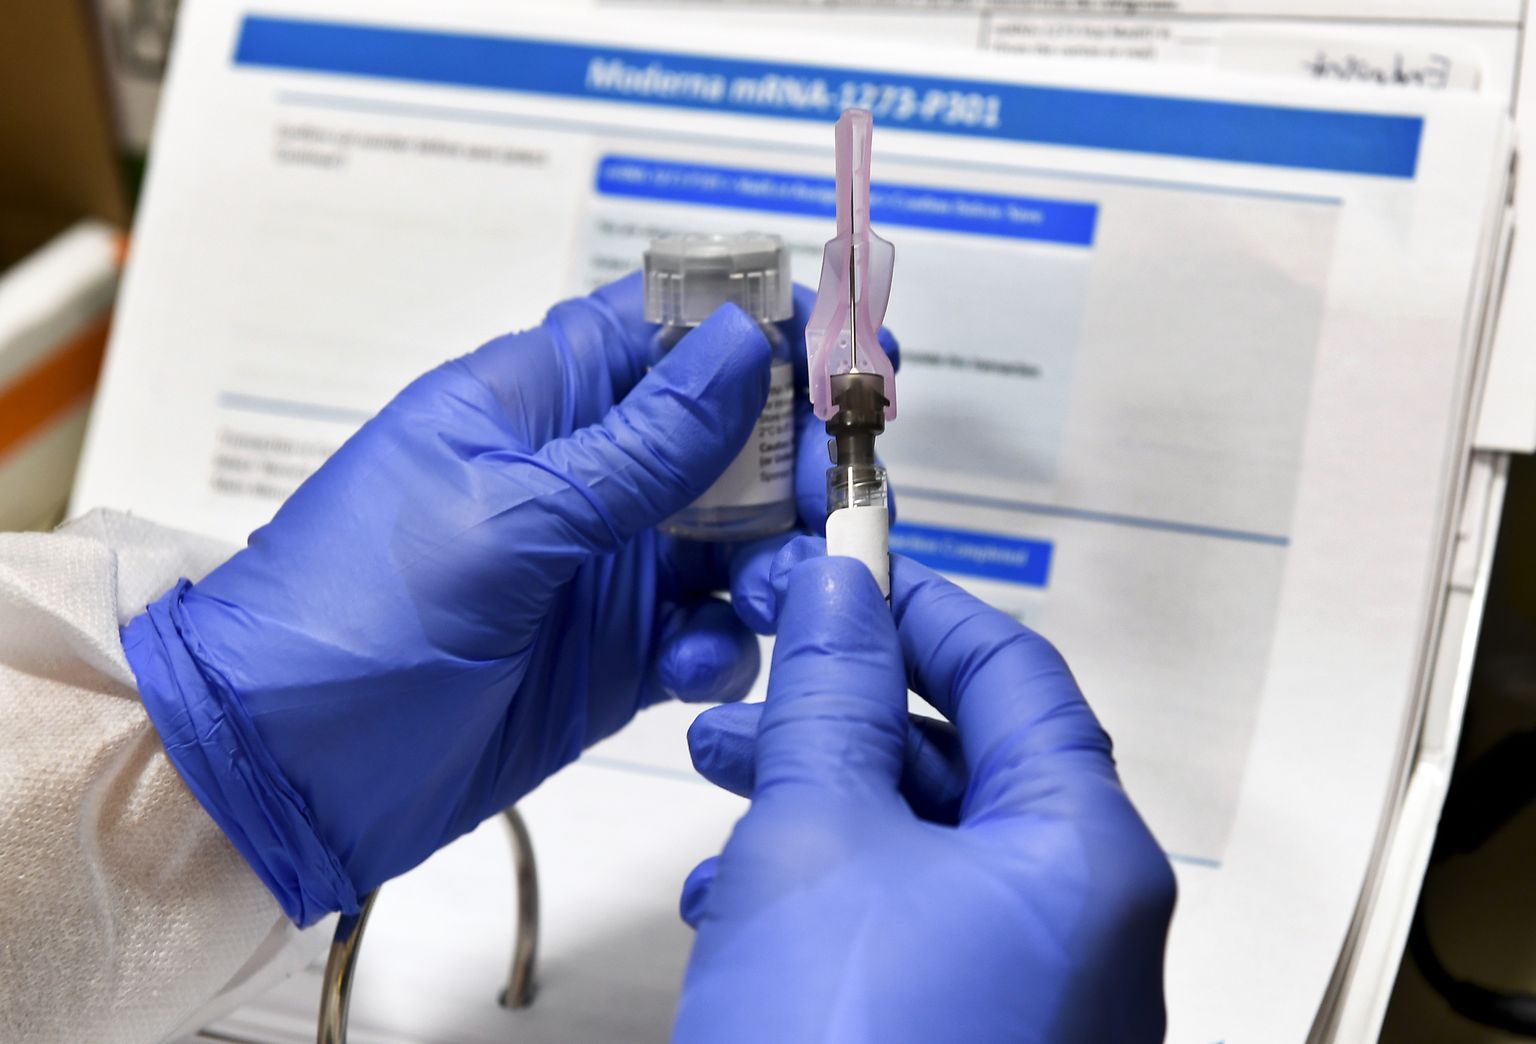 Õde Kathe Olmstead valmistab ette süsti maailma suurima koroonaviiruse vaktsiini uuringu alguses 27. juulil 2020 New Yorgi osariigis Binghamptonis.